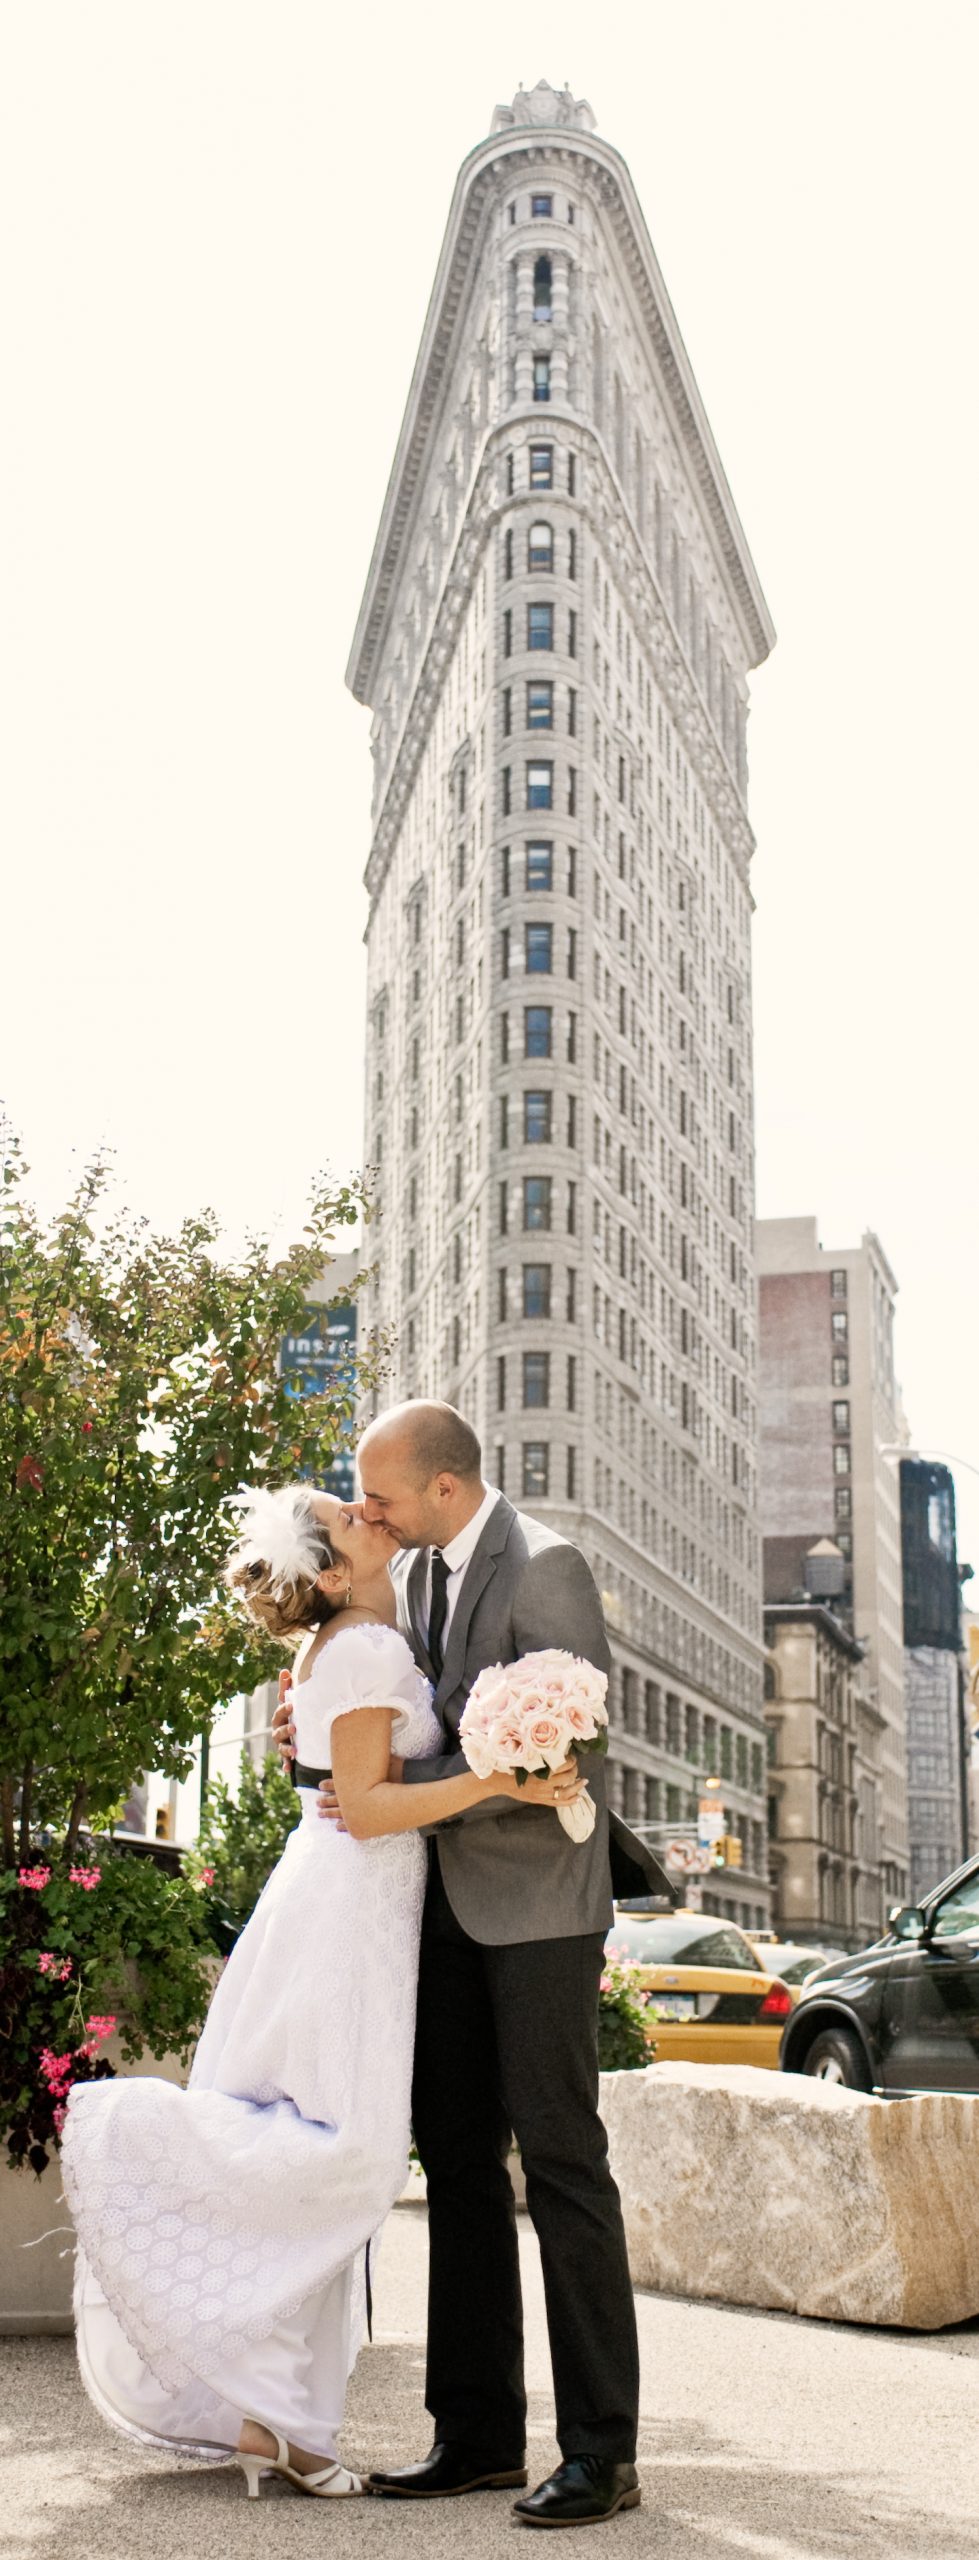 Heiraten In New York Machen Sie Sich Den Traum Wahr New York Aktuell